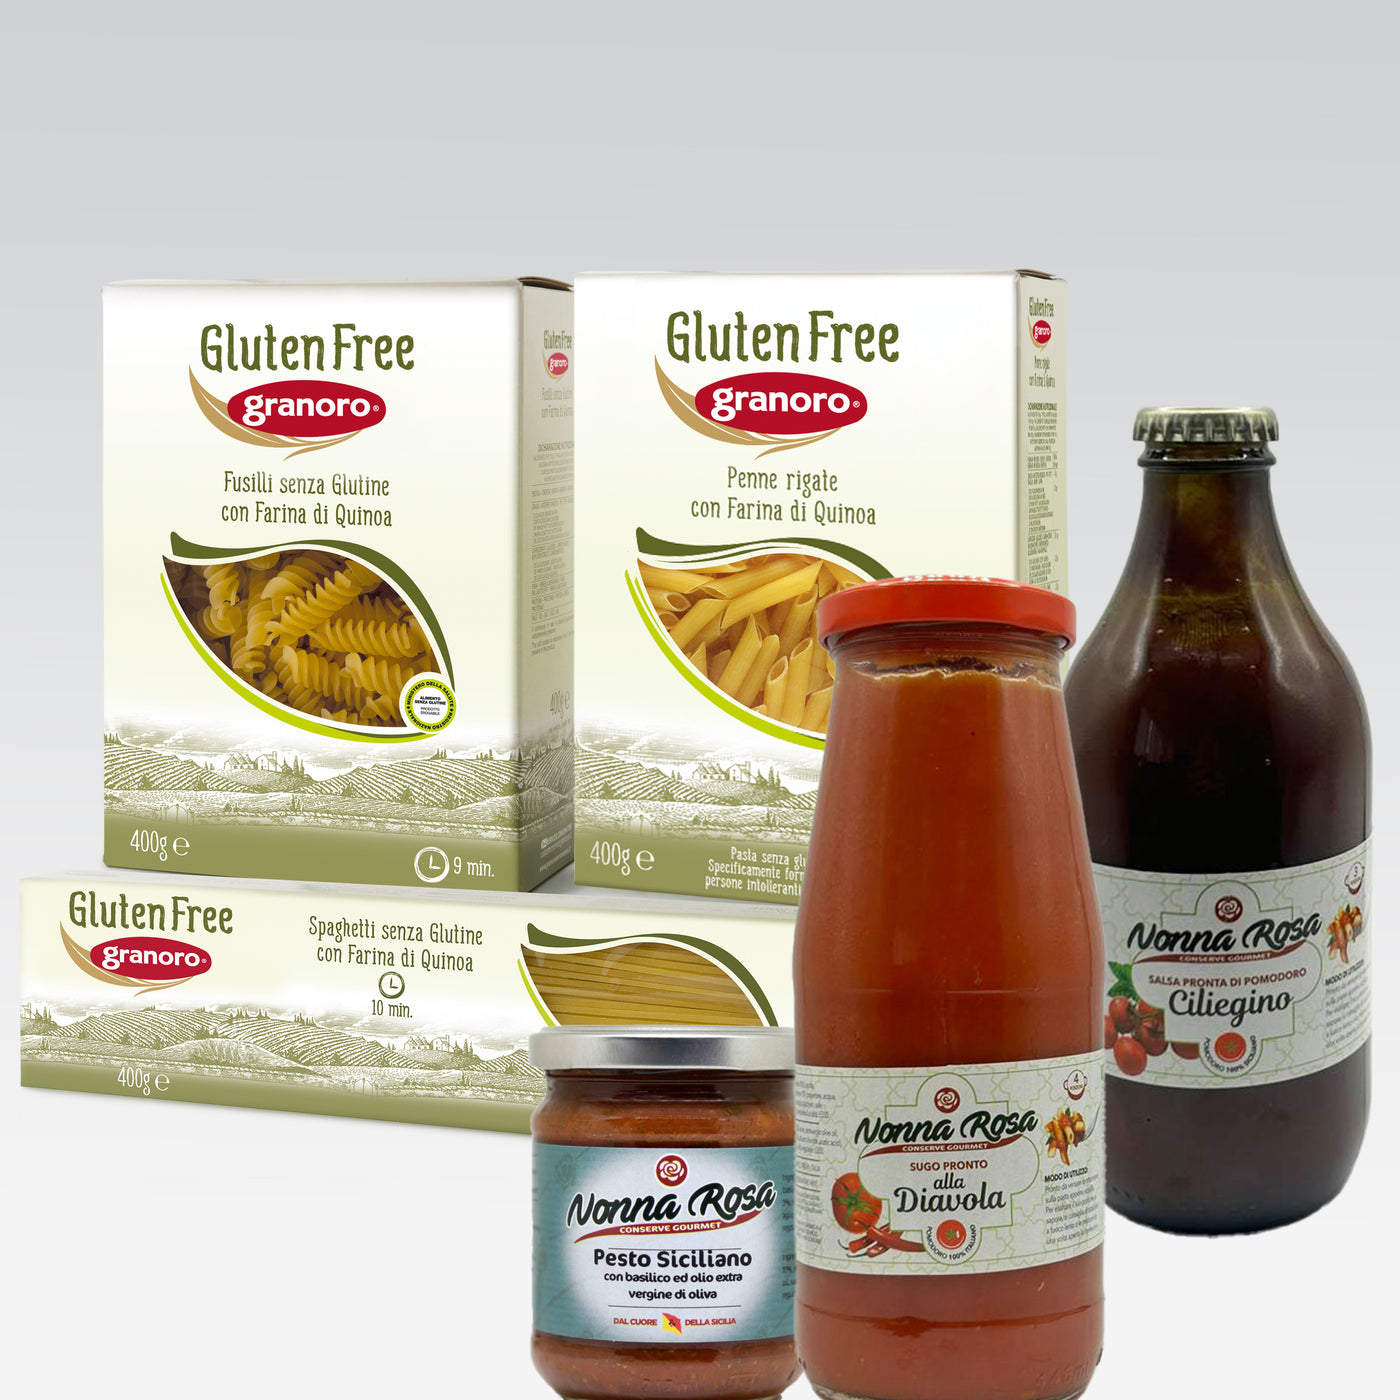 Granoro Gluten Free Pasta & Nonna Rosa Pasta Sauce & Pesto Box